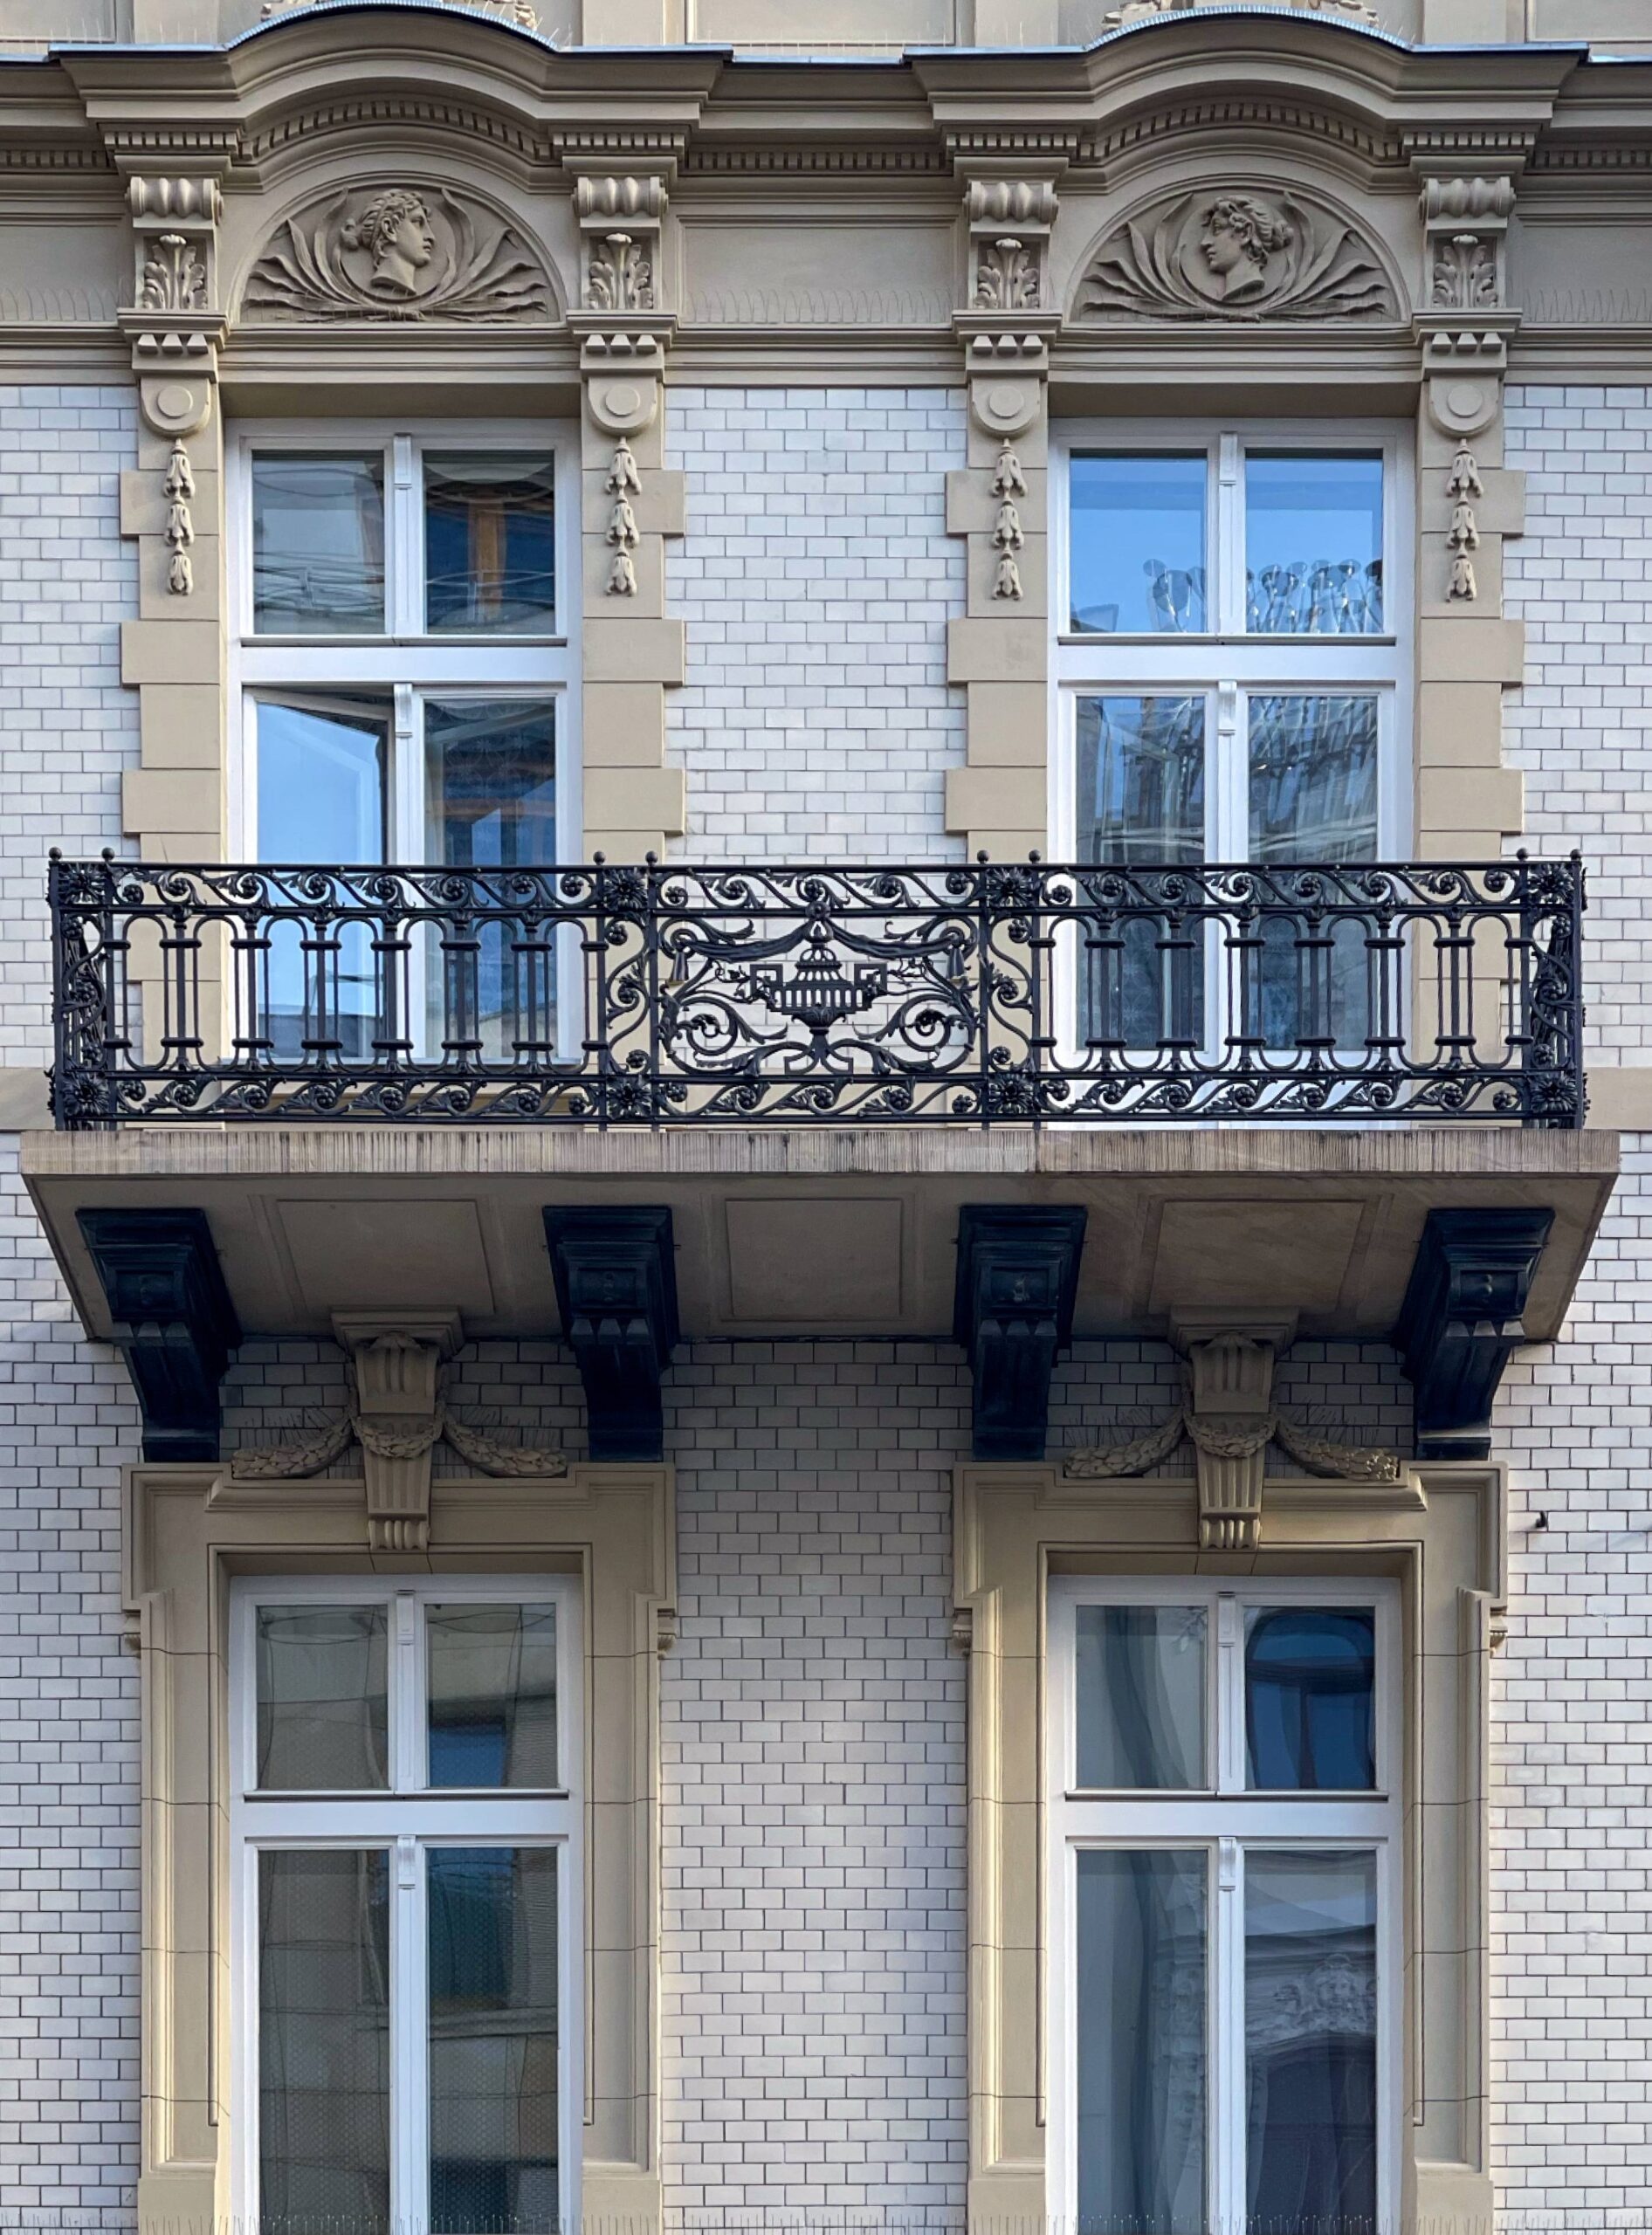 Elewacja frontowa, podwójny balkon II-go piętra. Fot. Mariusz Majewski 2022 r., źródło: AOD III.